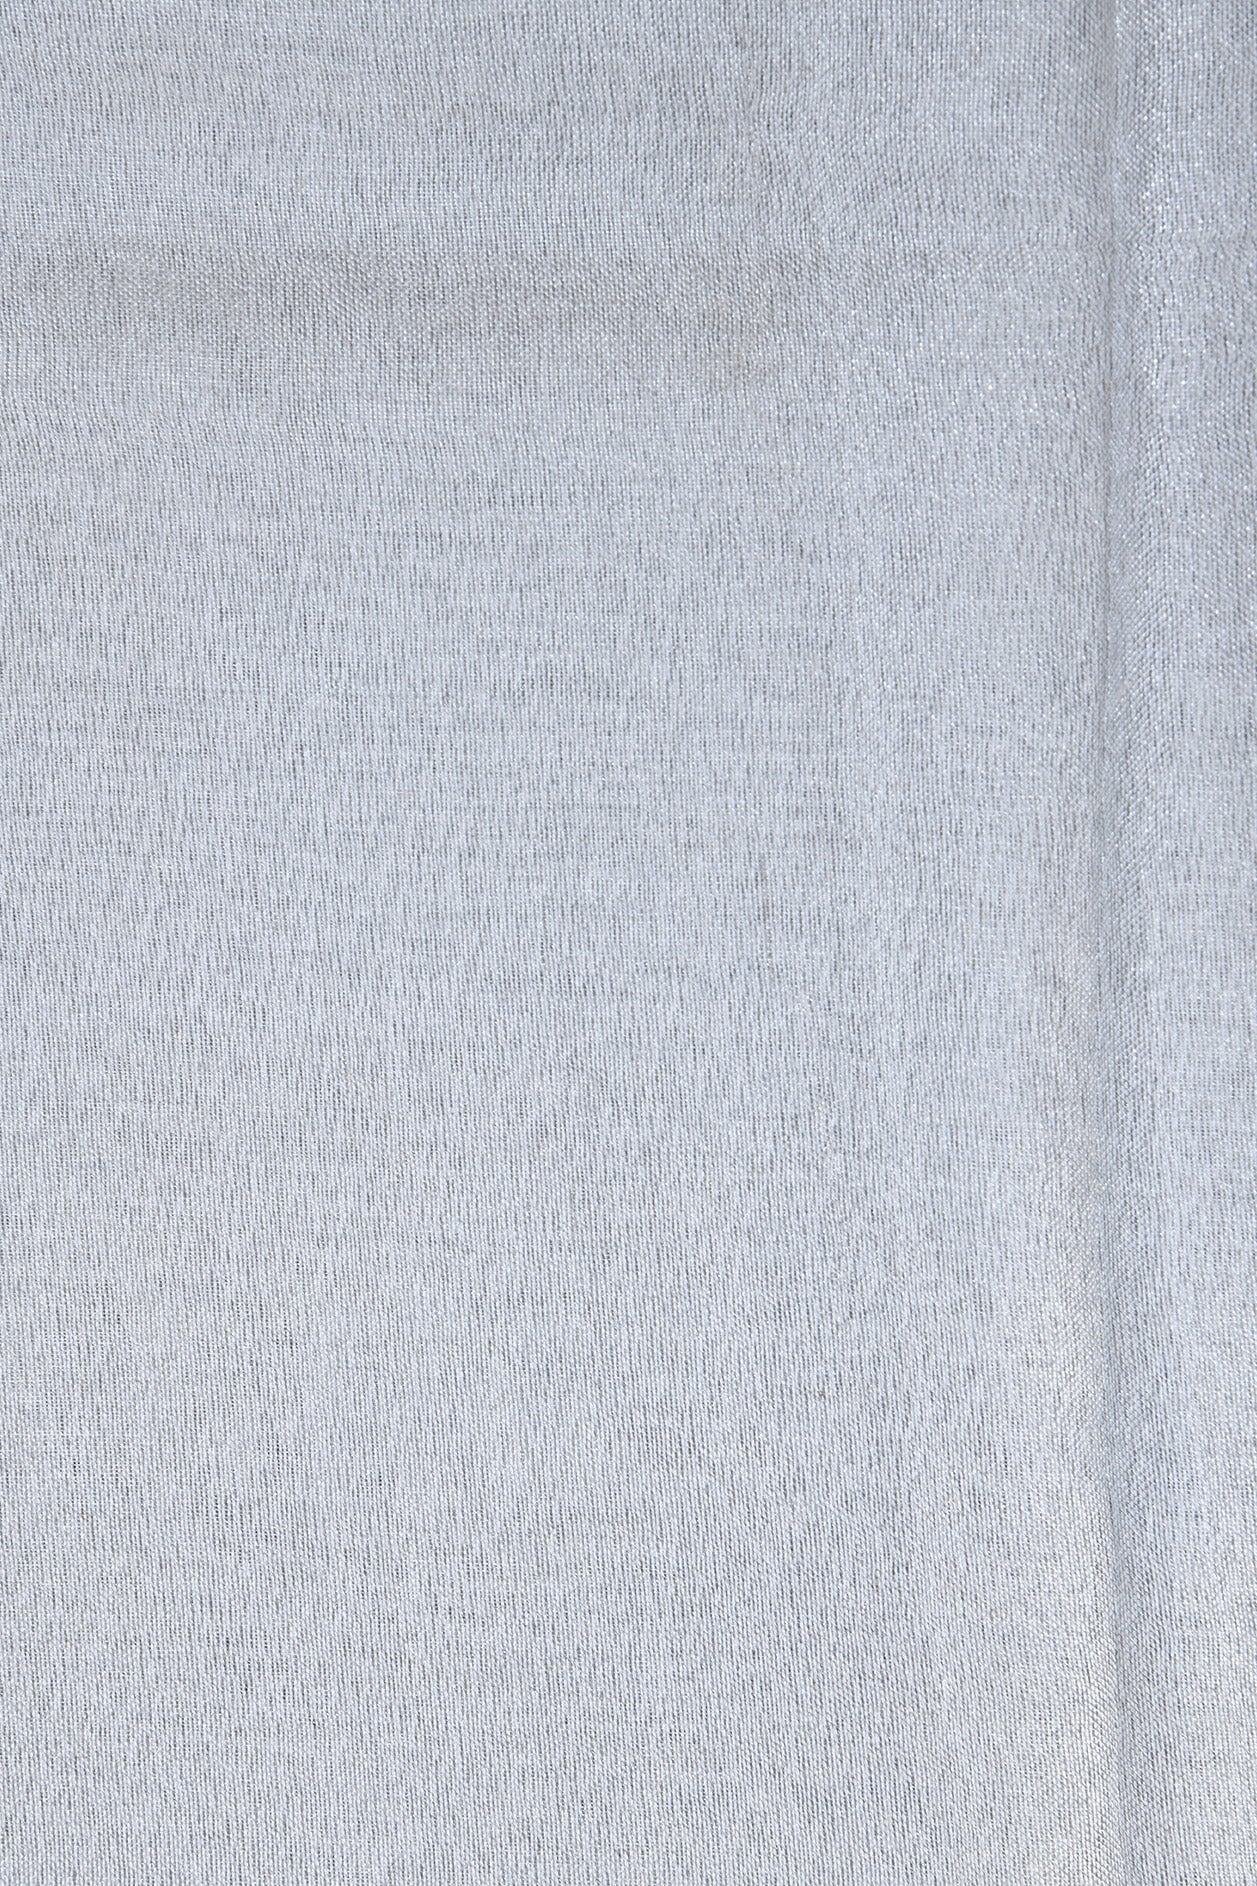 Silver Grey Linen Saree